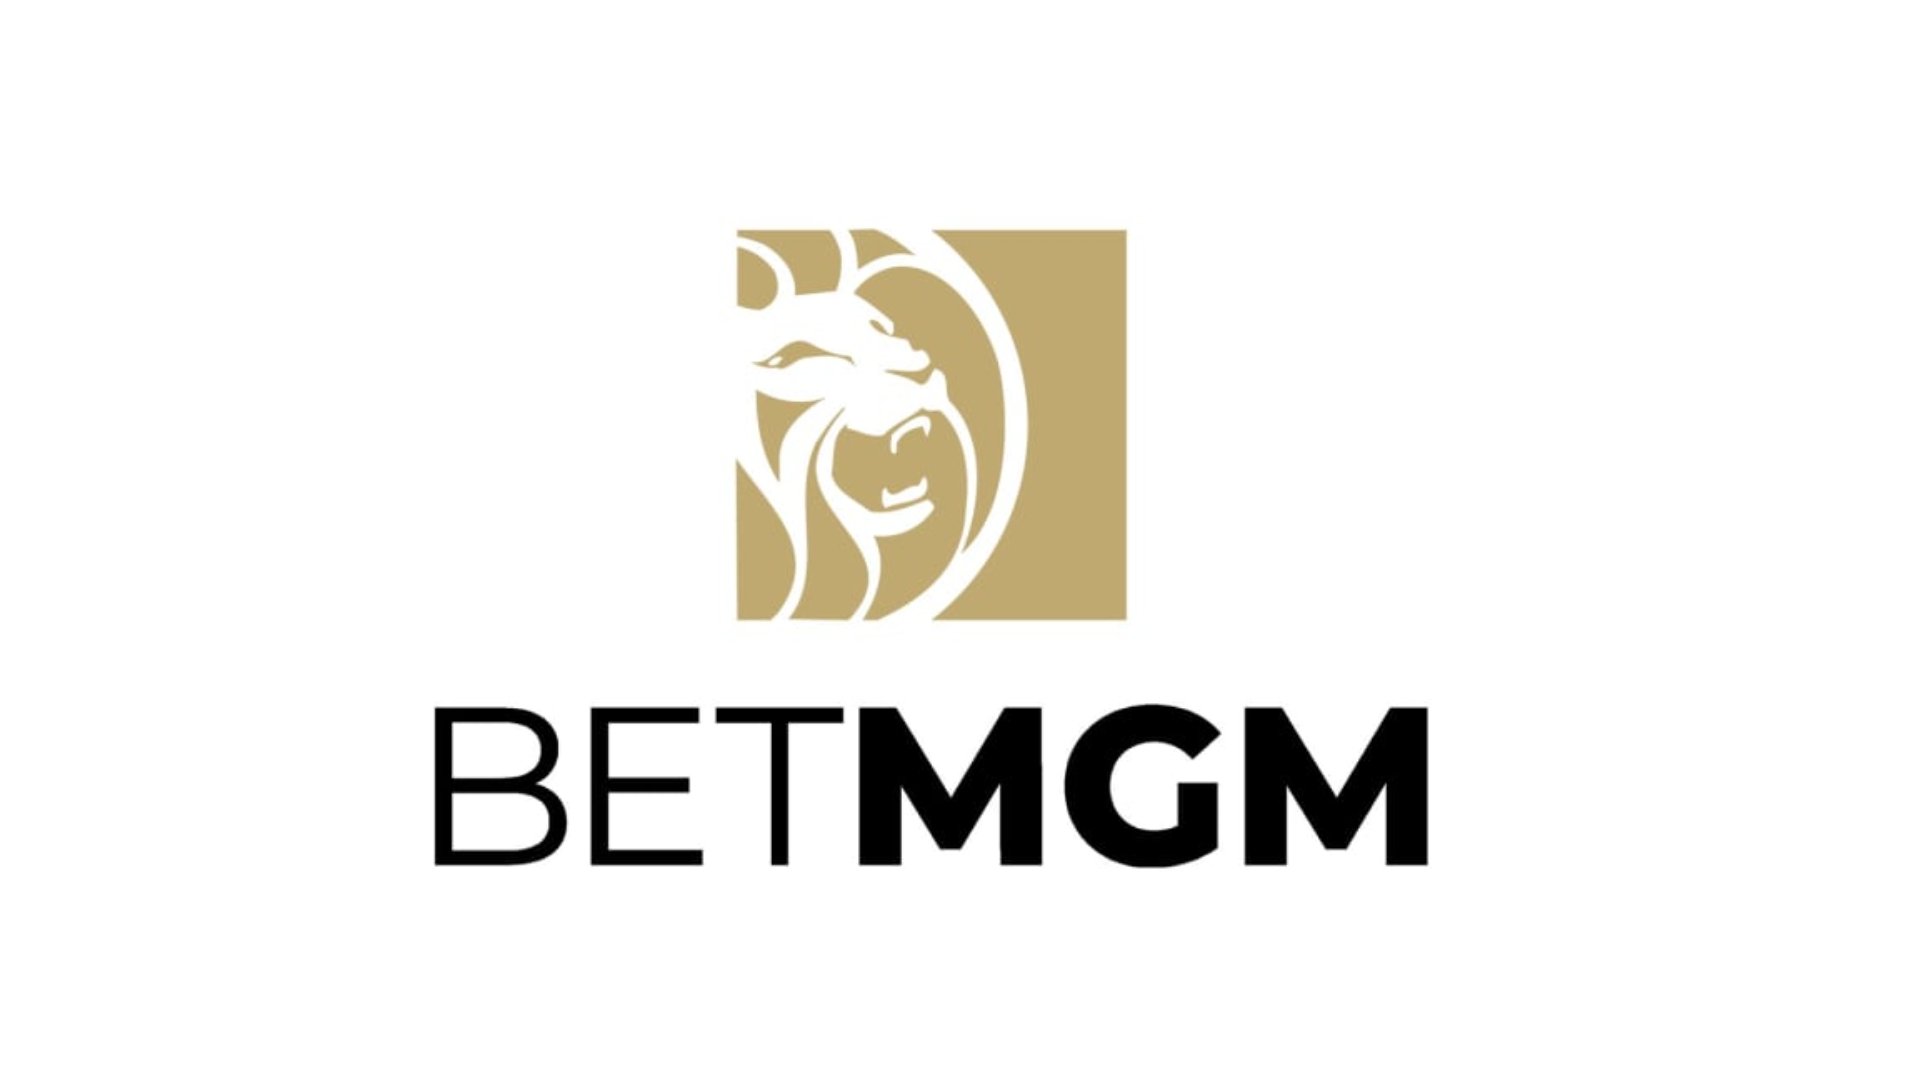 BetMGM anuncia parceria com SportsGrid para integrar seu conteúdo na programação ao vivo.